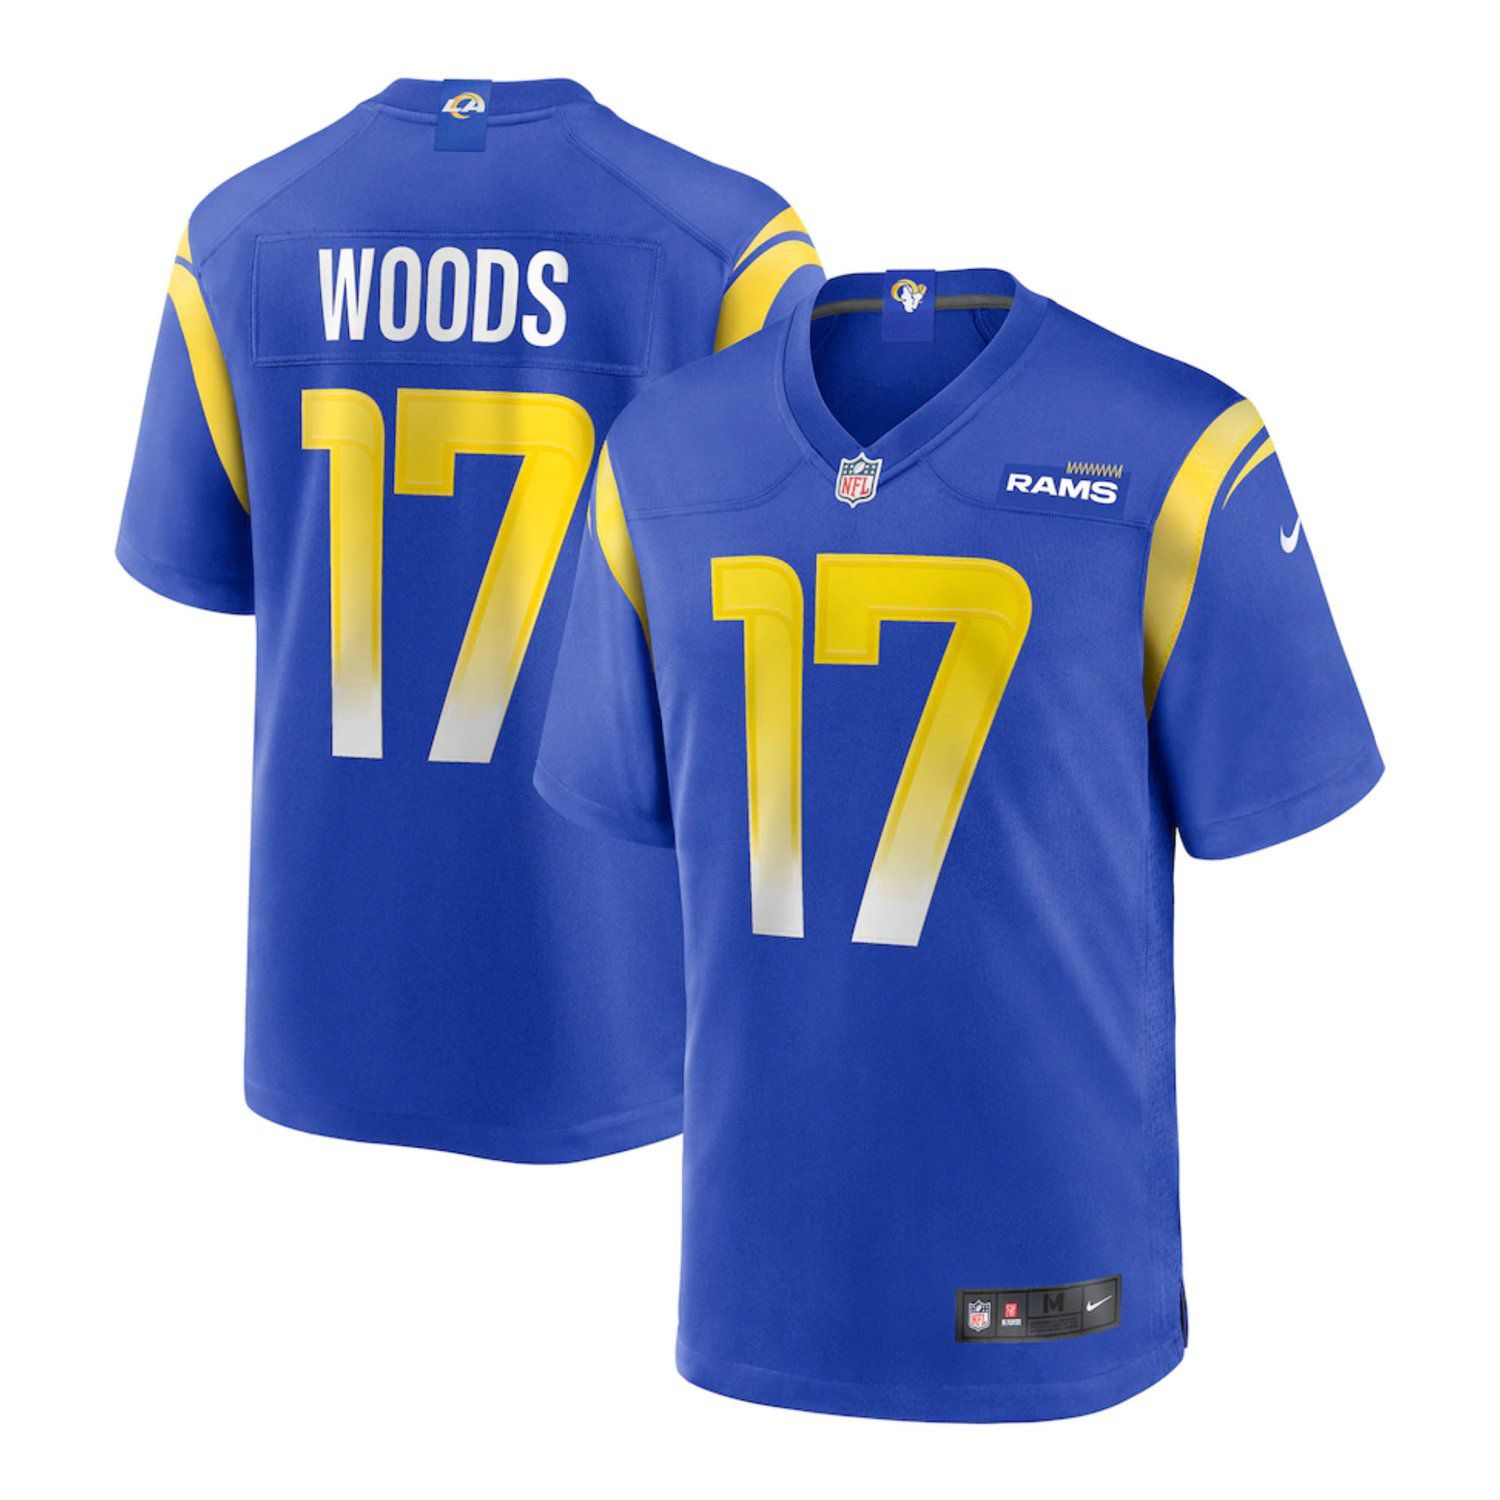 Men Los Angeles Rams #17 Woods Robert Nike Royal Game NFL Jersey->los angeles rams->NFL Jersey